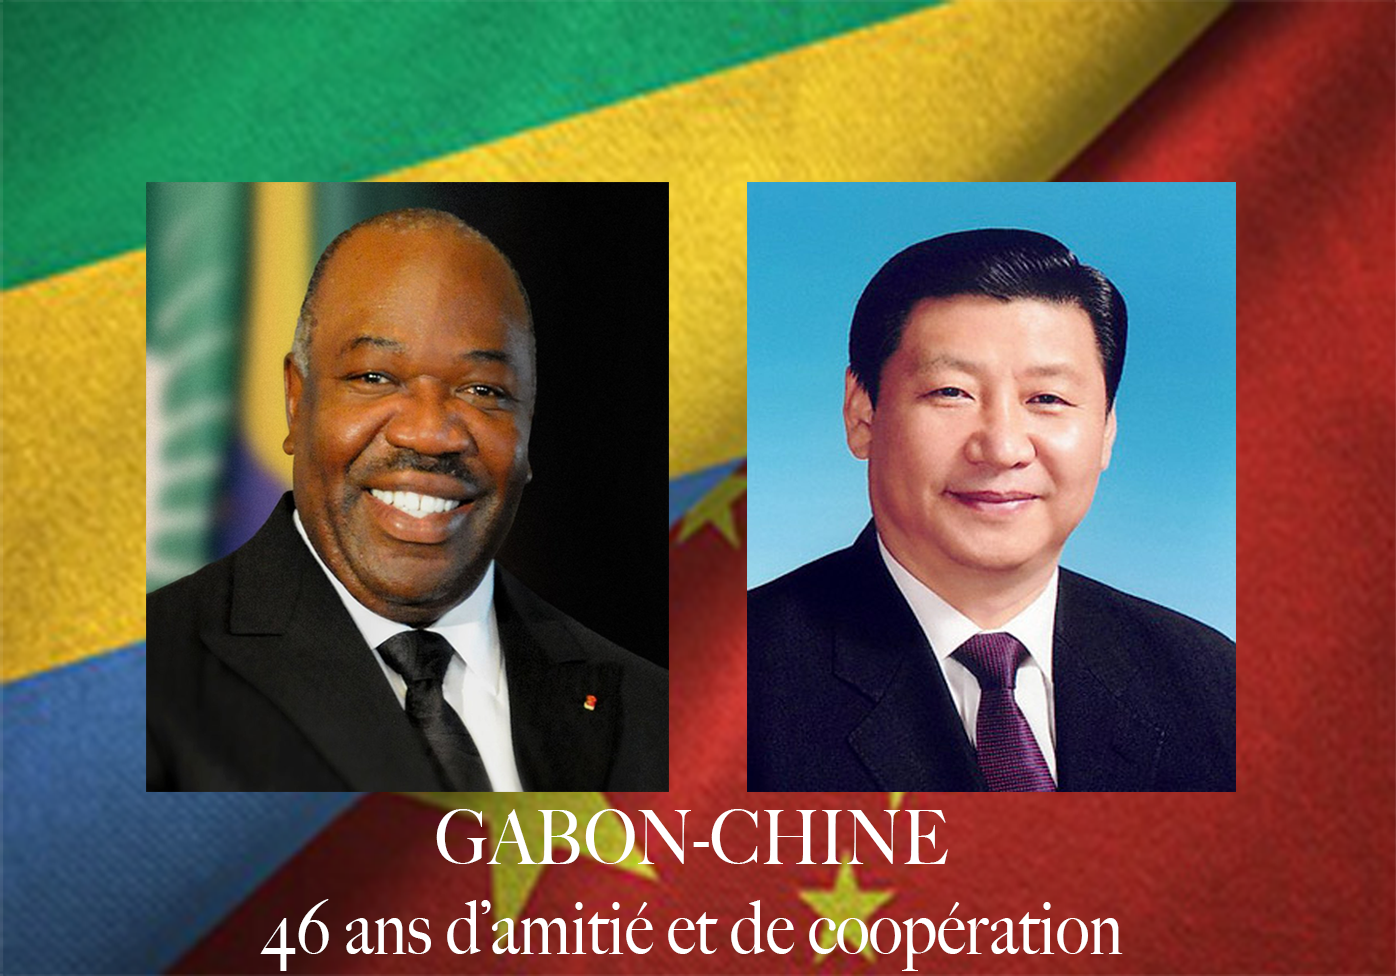 Gabon - Chine, 46 ans d’amitié et de coopération